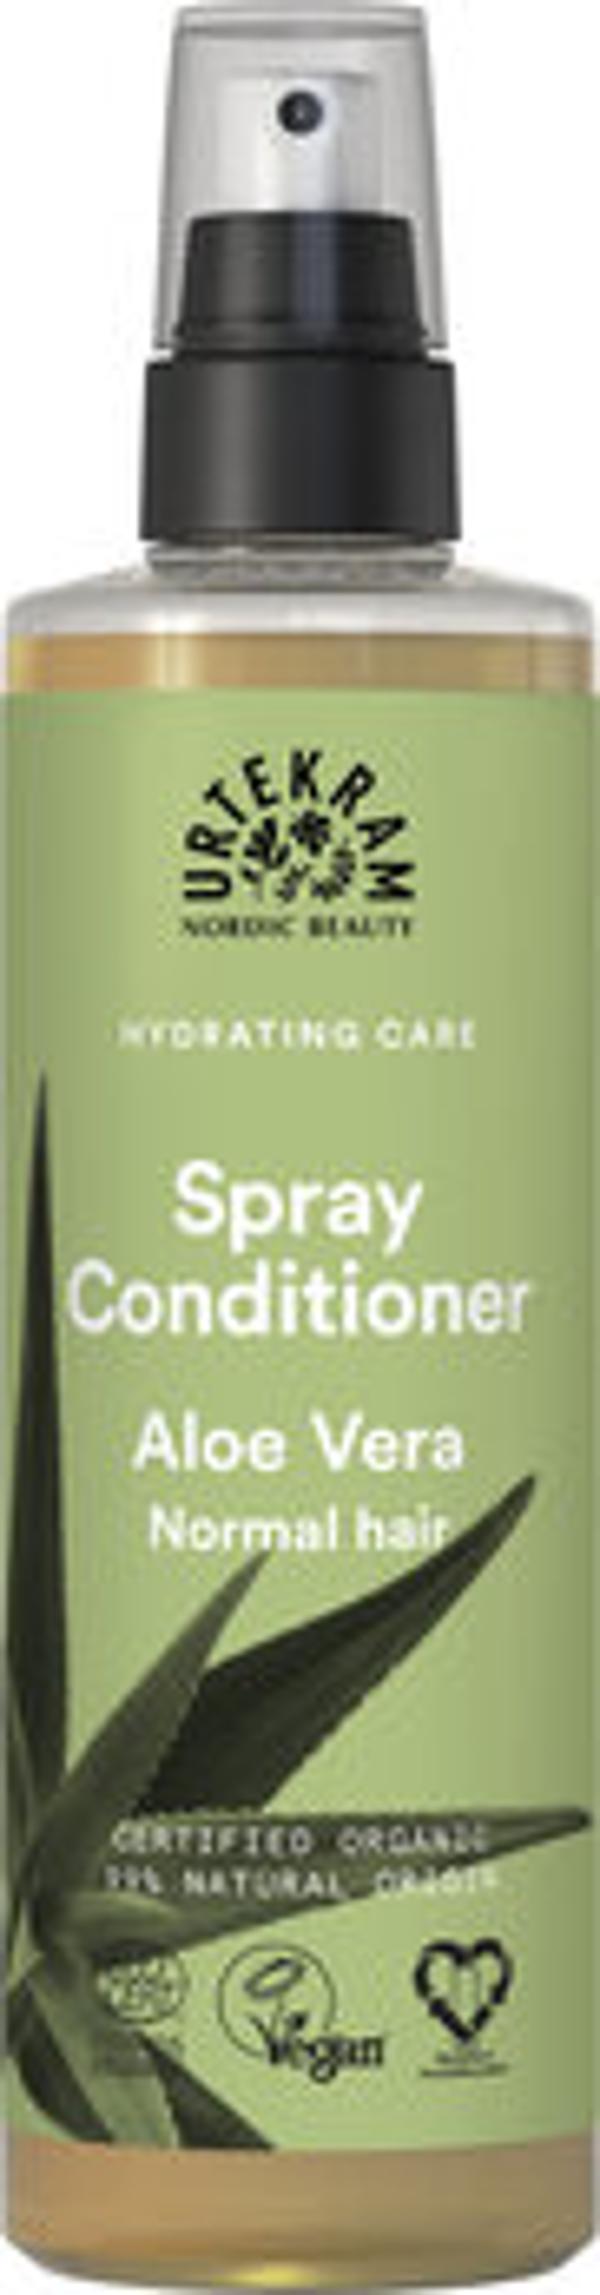 Produktfoto zu Spray Conditioner Aloe vera von Urtekram